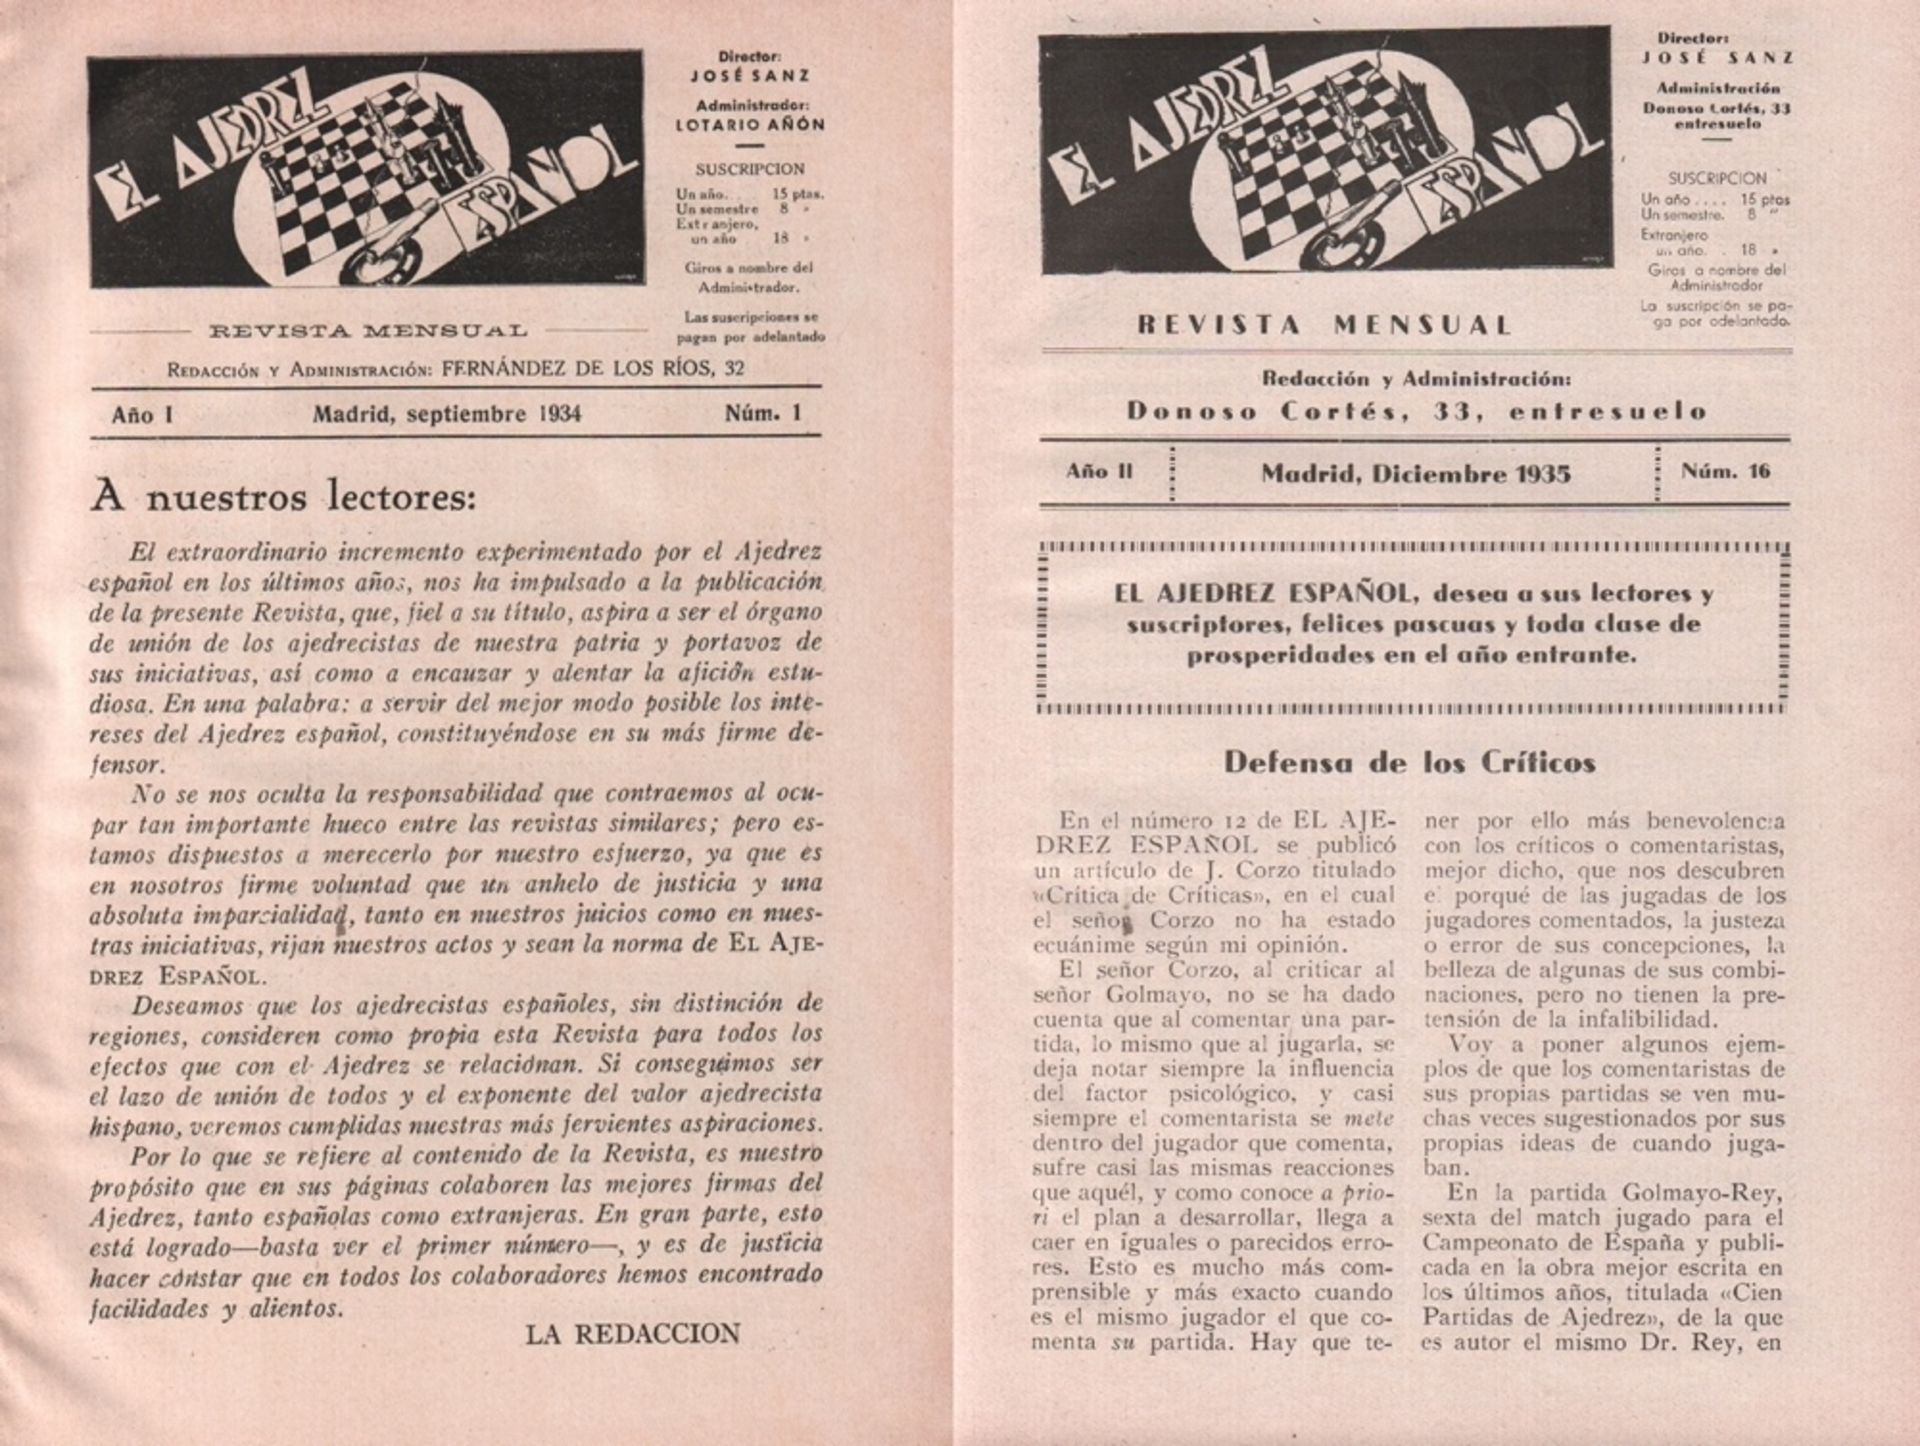 El Ajedrez Español. Revista mensual. Director: José Sanz. Madrid 1934 - 1935. 8°. Mit einigen Tafeln